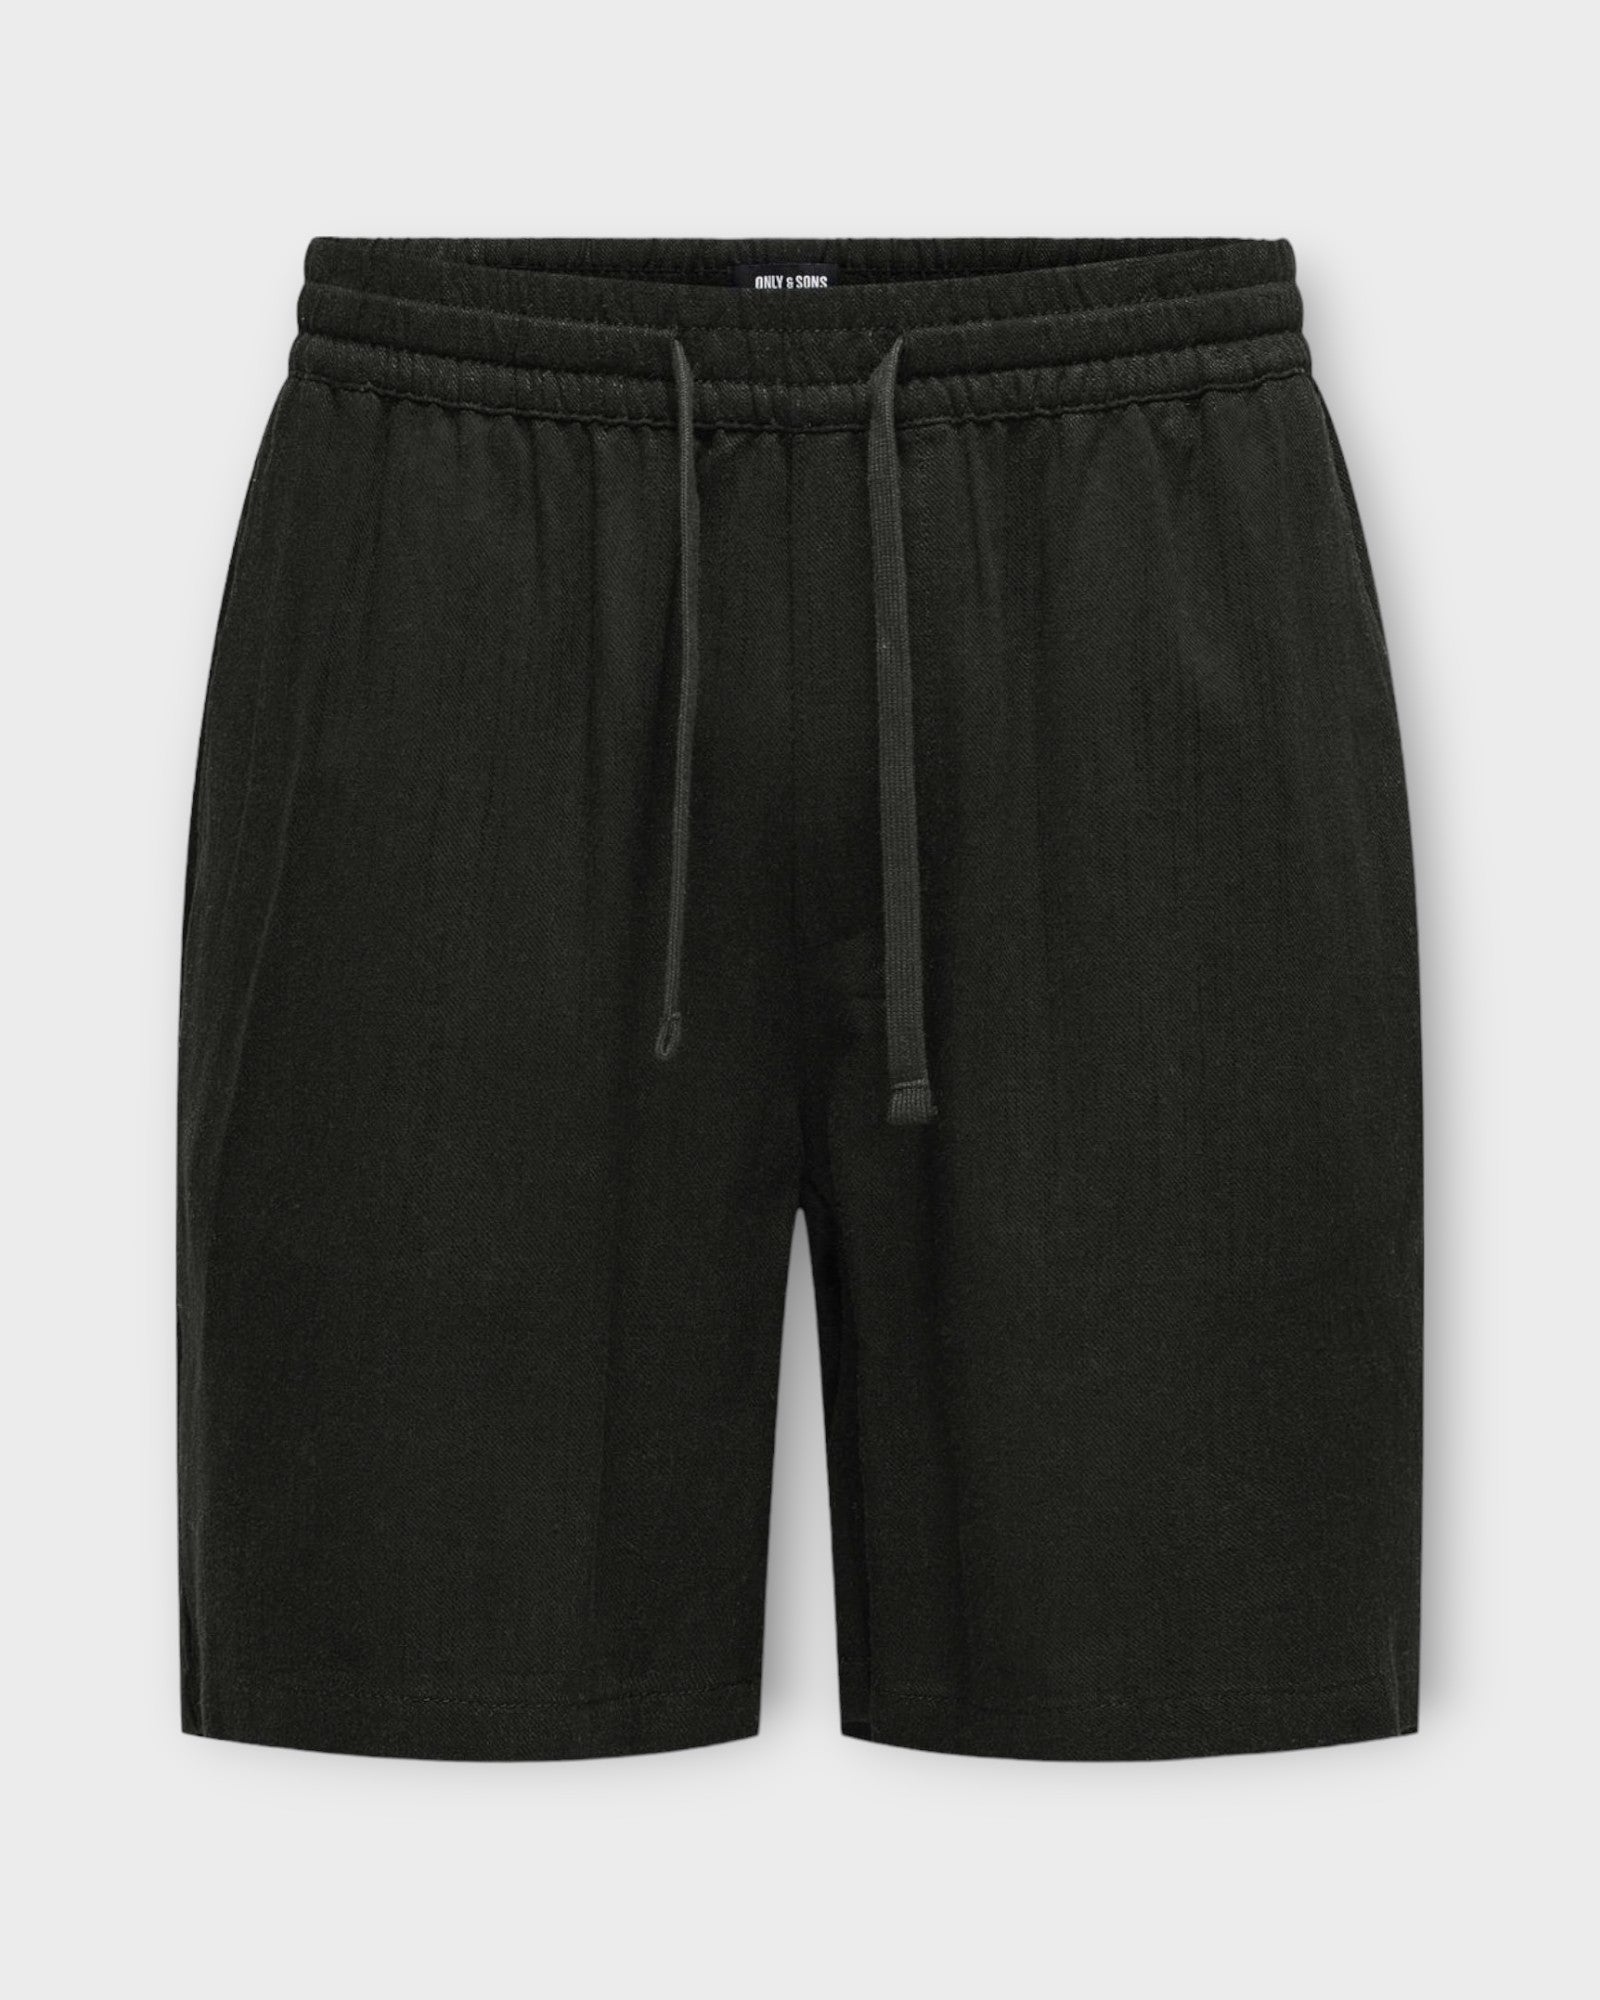 Only and Sons Tel Viscose Linen Shorts Black, sorte hør shorts til mænd. Her set forfra.